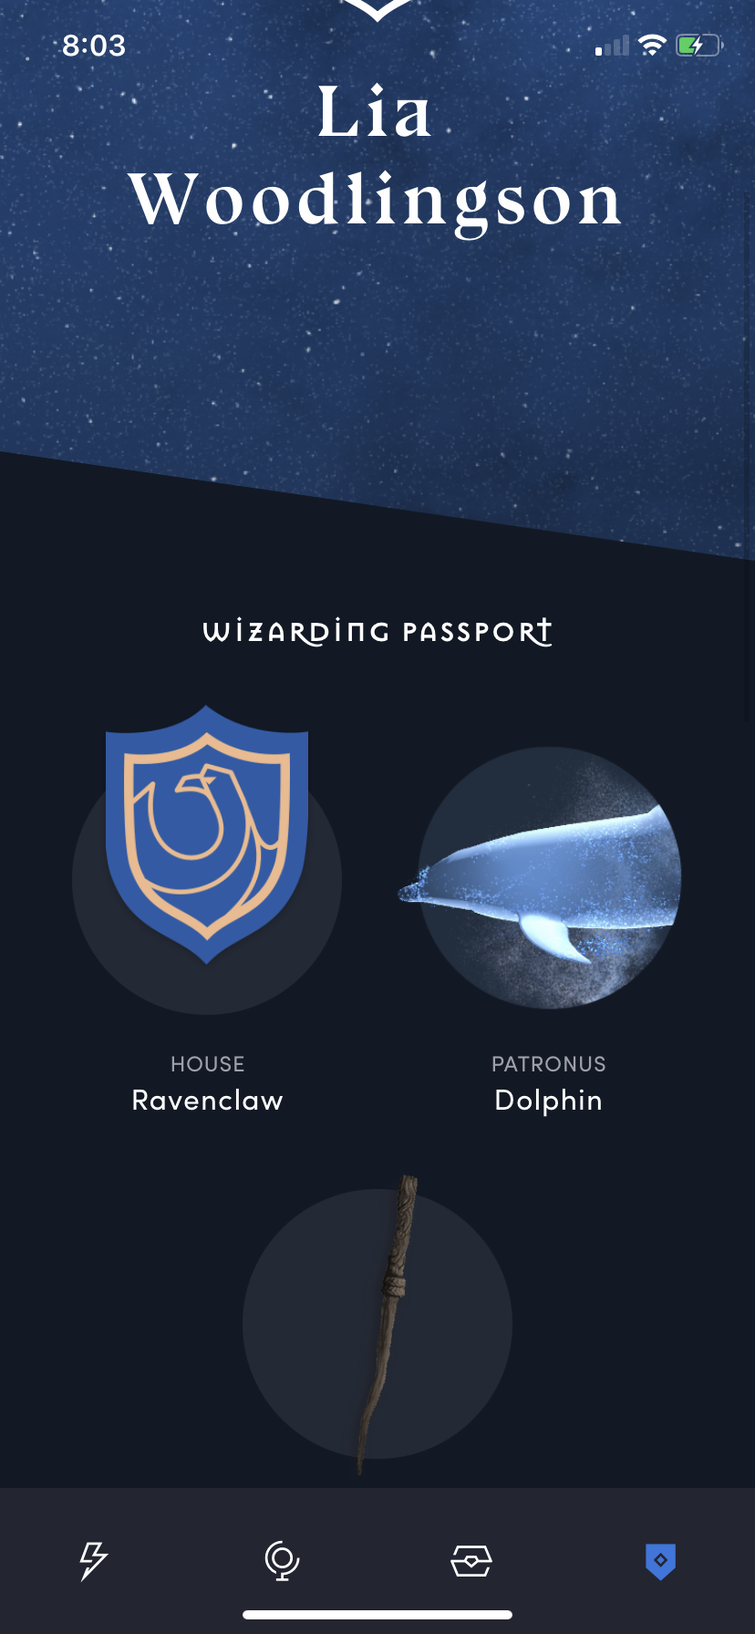 Harry Potter Fan Club - Apps on Google Play